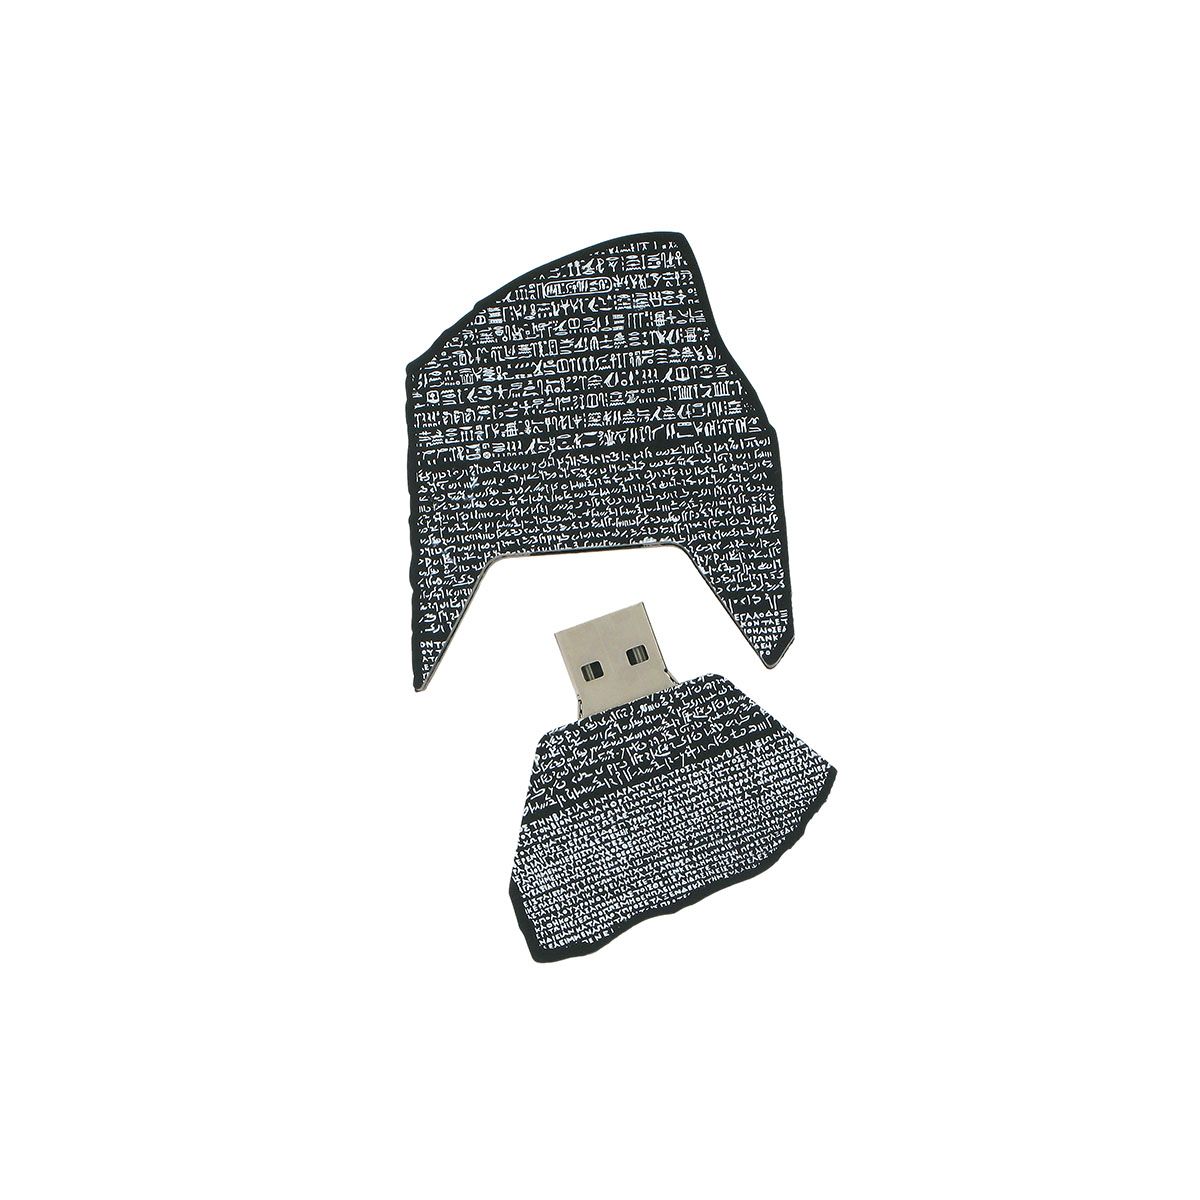 大英博物館內的紀念品商店，帶走你喜歡的文物，這是Rosetta Stone USB Stick(羅塞塔石碑USB)。